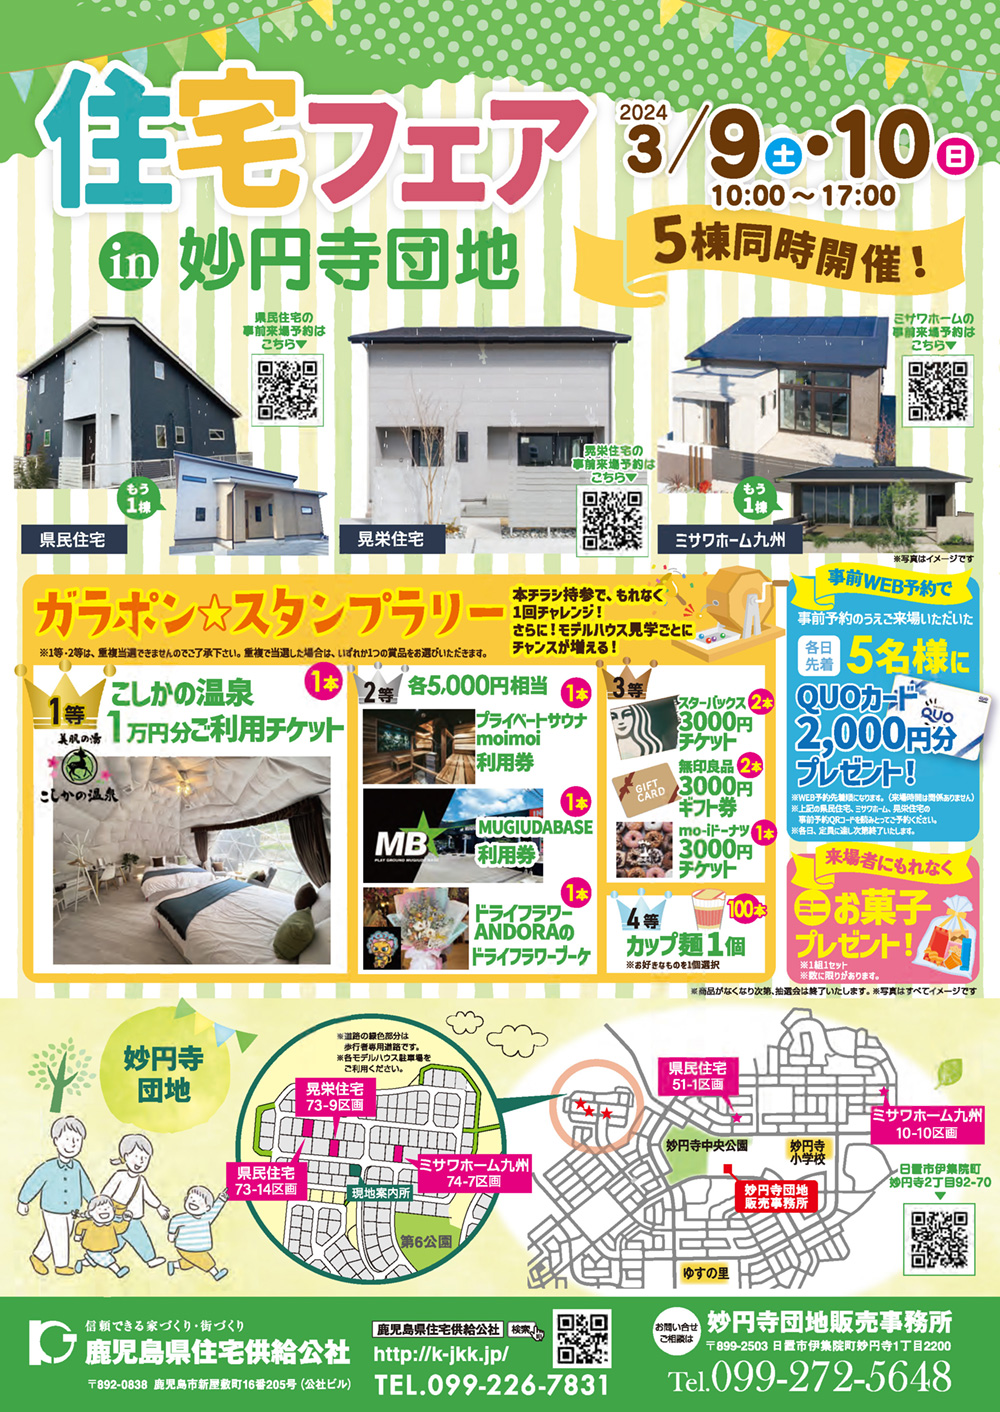 3月9日(土)・10日(日) 妙円寺団地にて5棟同時! 住宅フェアを開催!PDFダウンロード